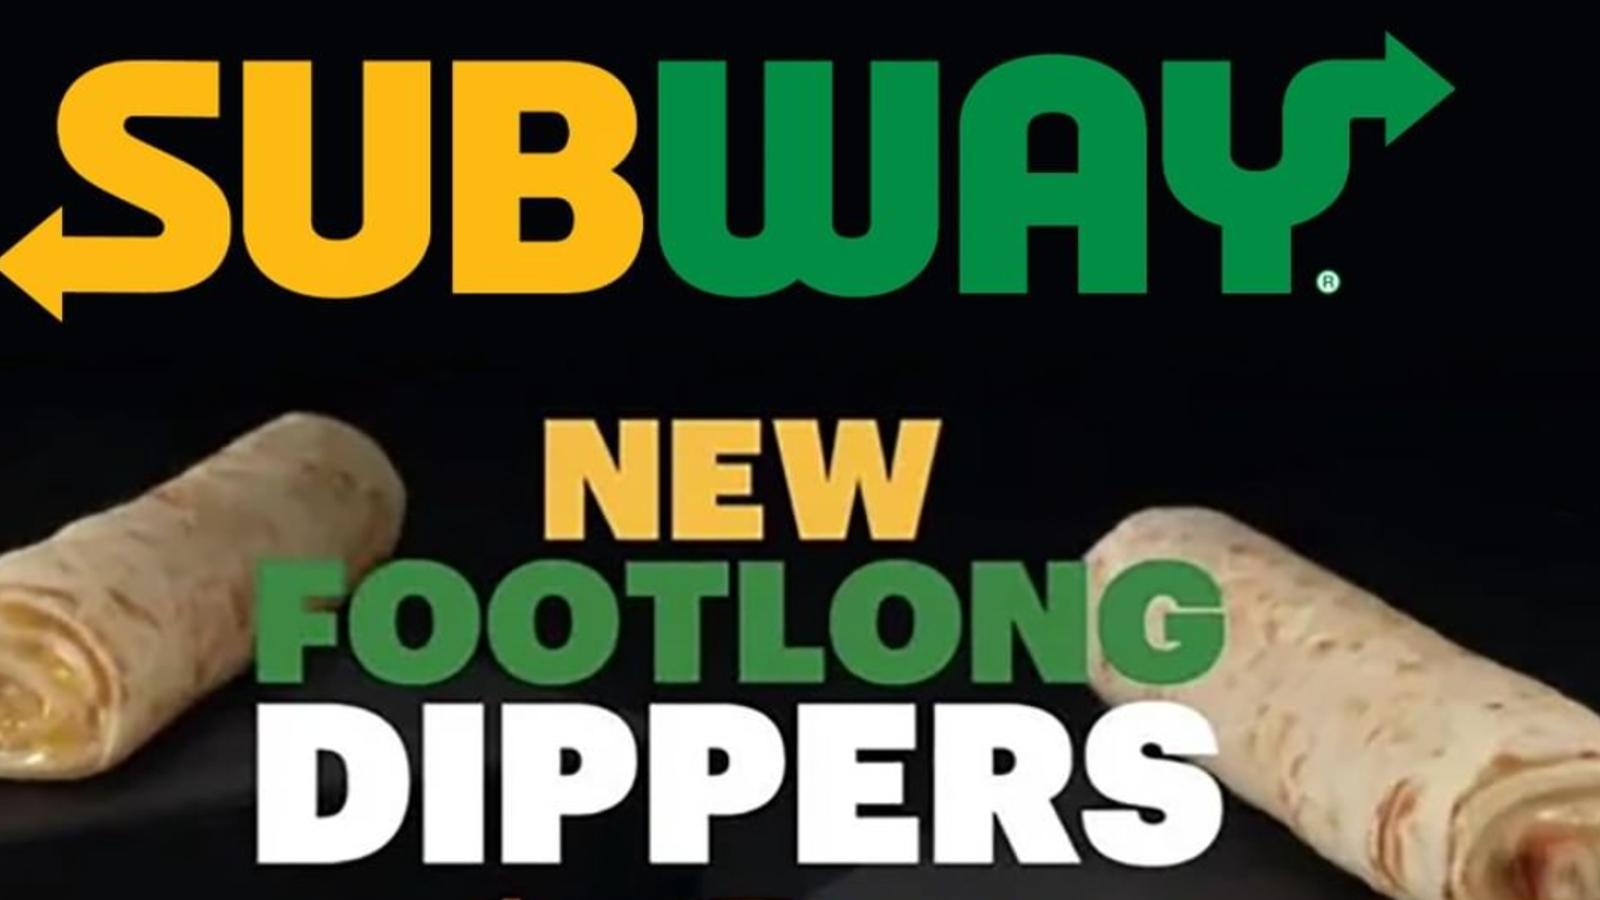 Subway footlong dippers